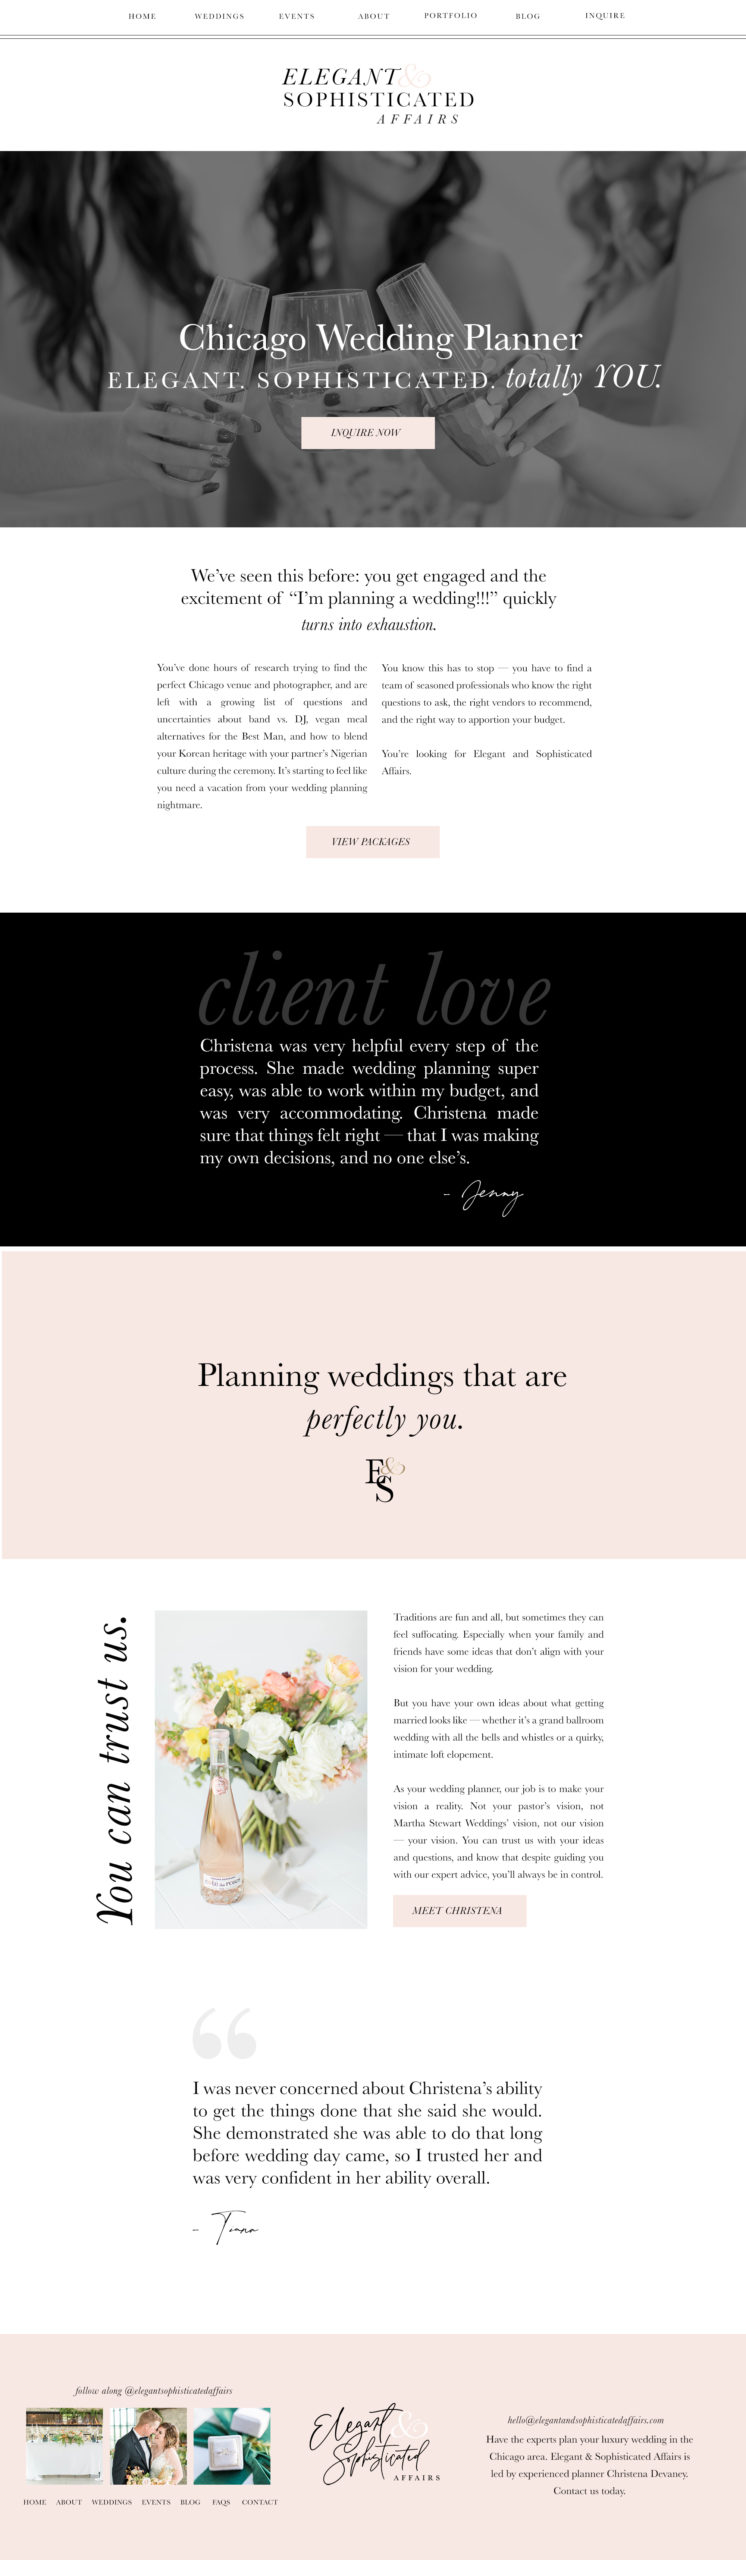 custom showit website / showit designer / branding for wedding businesses / showit template